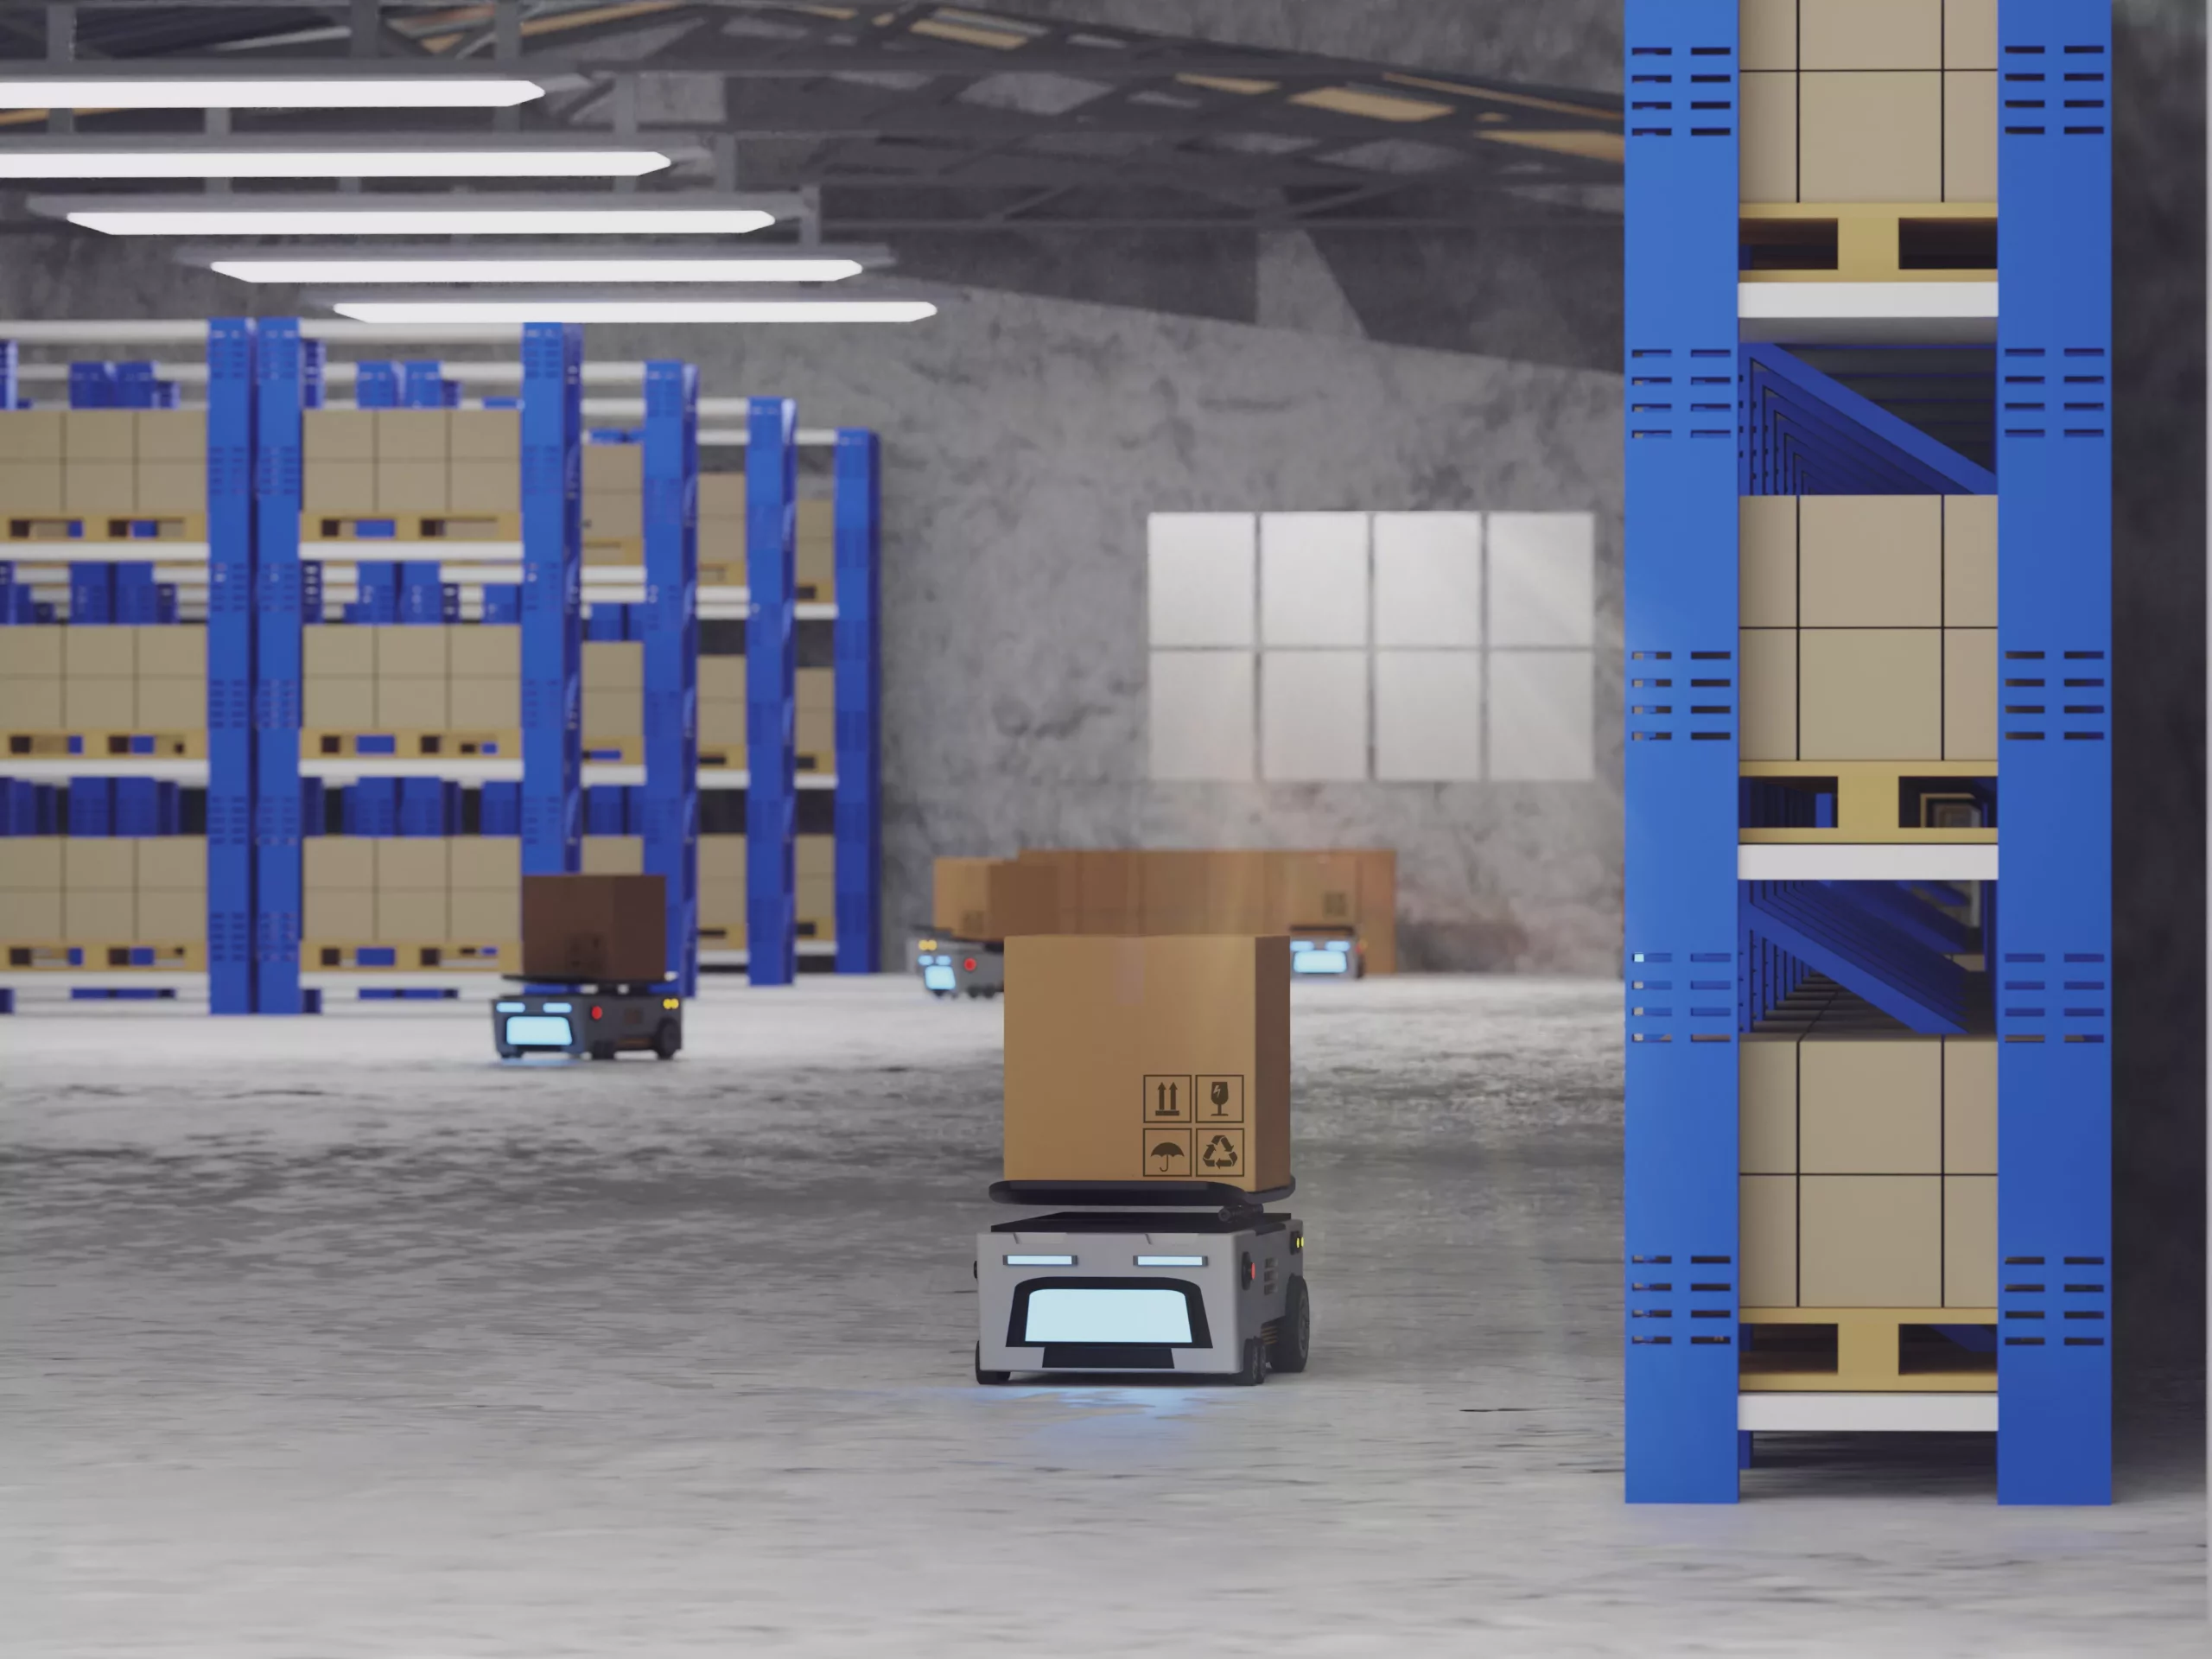 Bodega con varias cajas almacenadas y una caja sobre una báscula. Panasonic prueba en Japón robots para hacer entregas